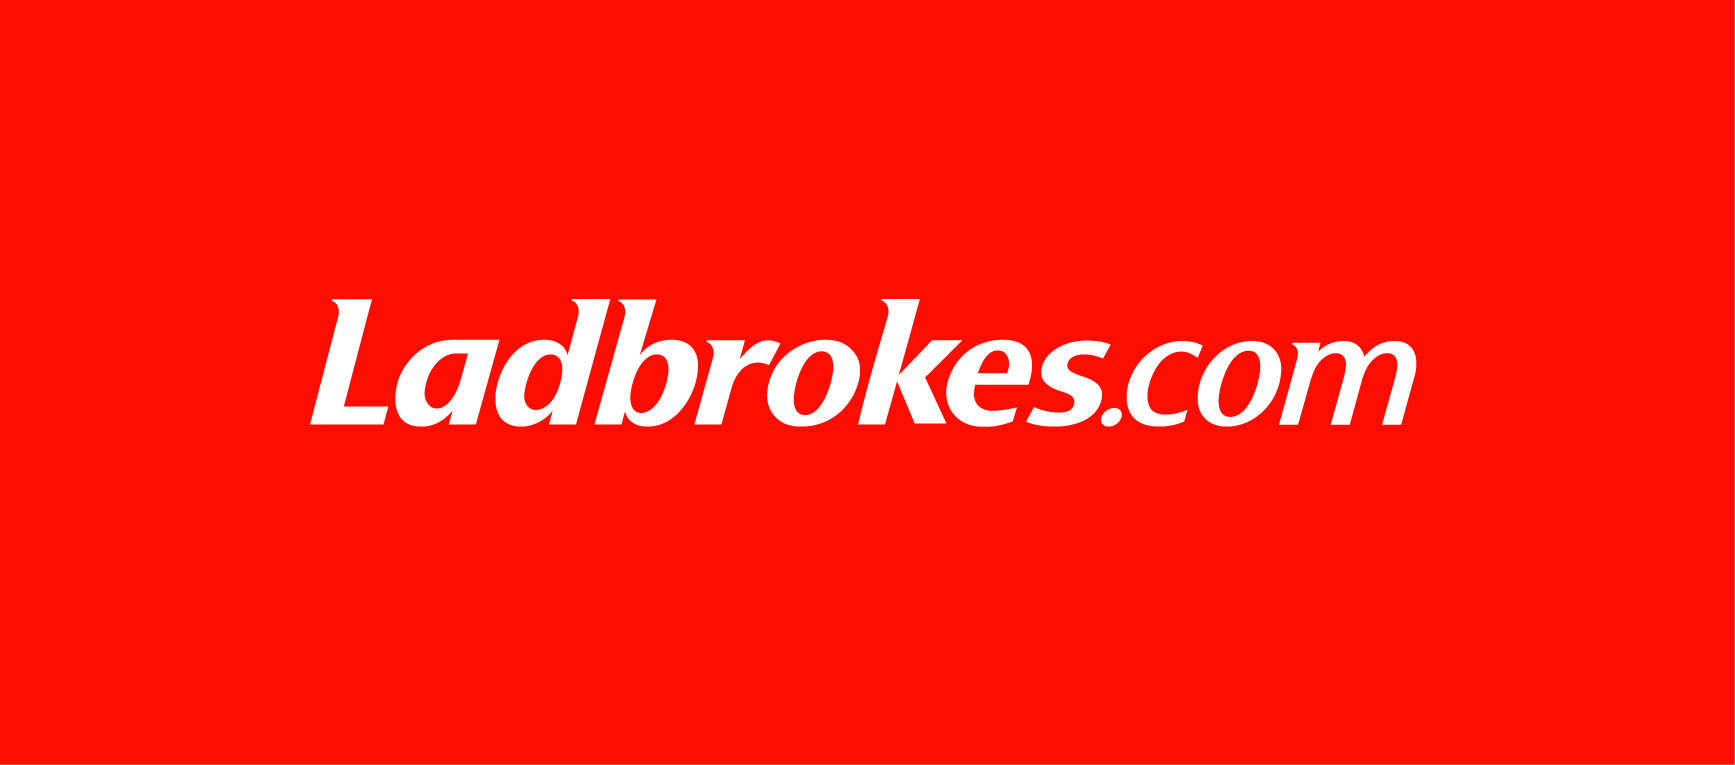 ladbrokes logo 03